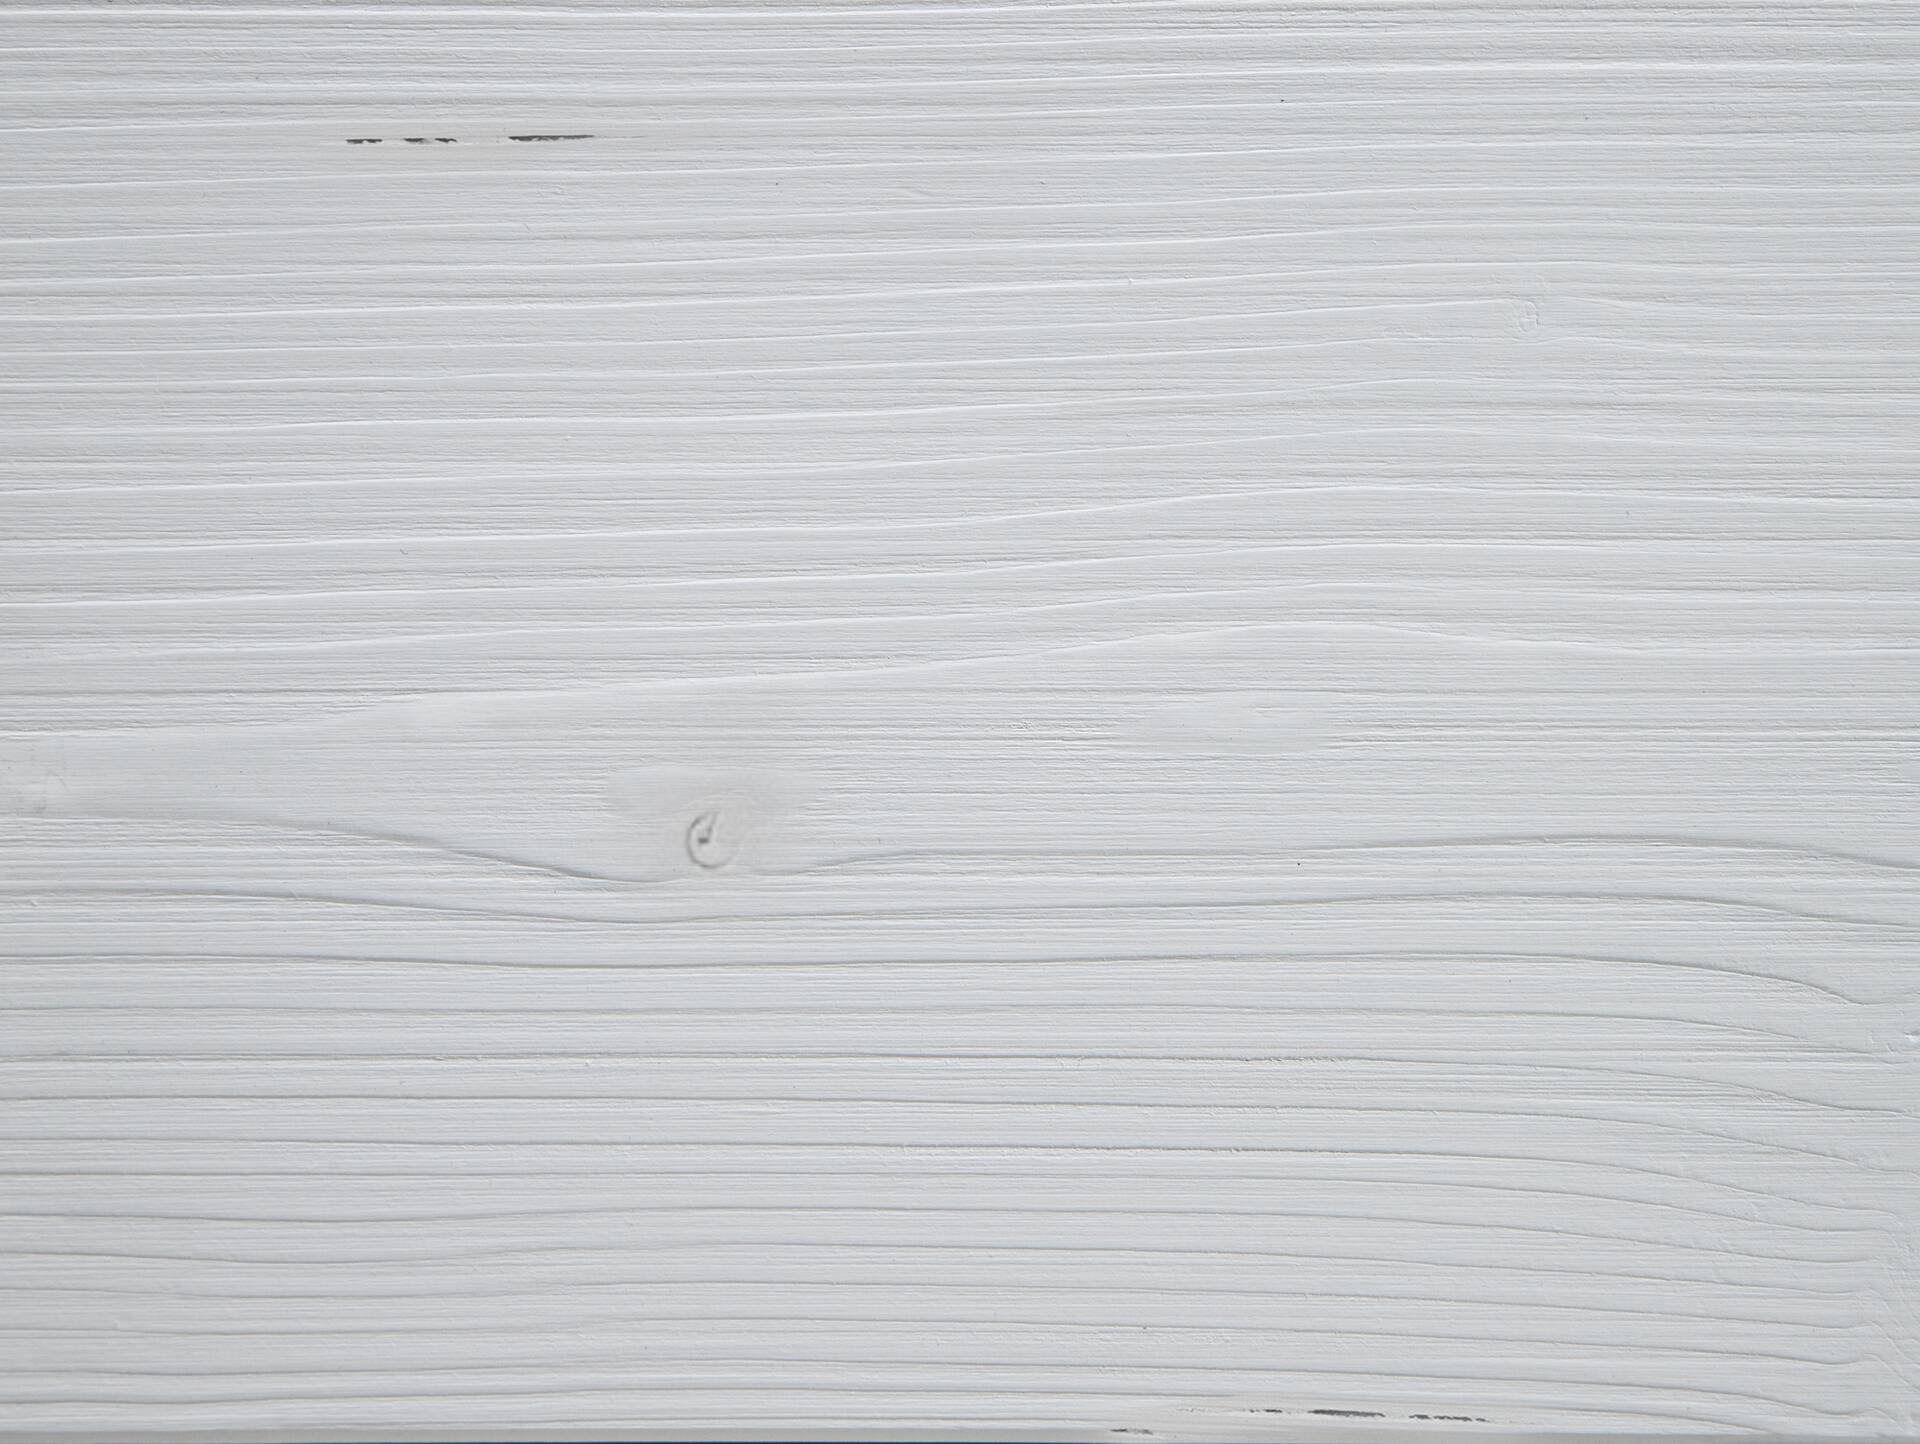 LUKY Kufenbett mit Polsterkopfteil, Material Massivholz, Fichte massiv, Kufen schwarz 180 x 200 cm | weiss | Stoff Braun